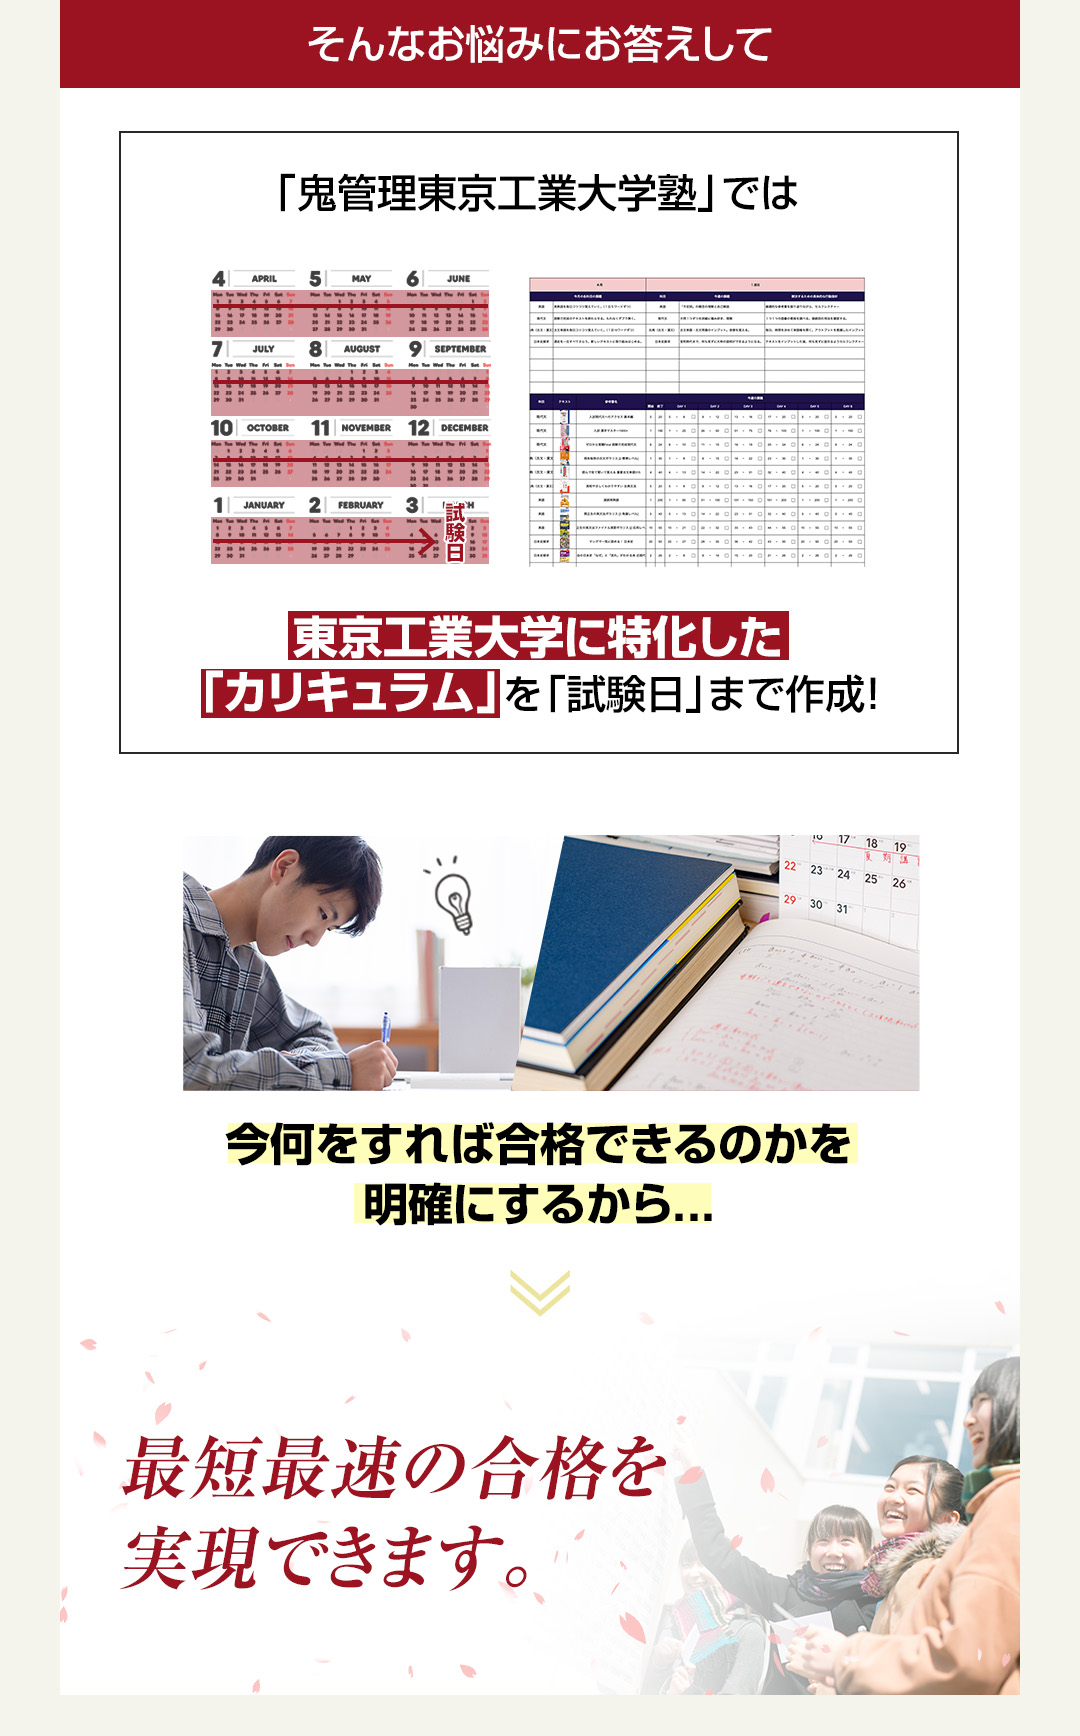 「鬼管理東京工業大学塾」では東京工業大学に特化した「カリキュラム」を「試験日」まで作成